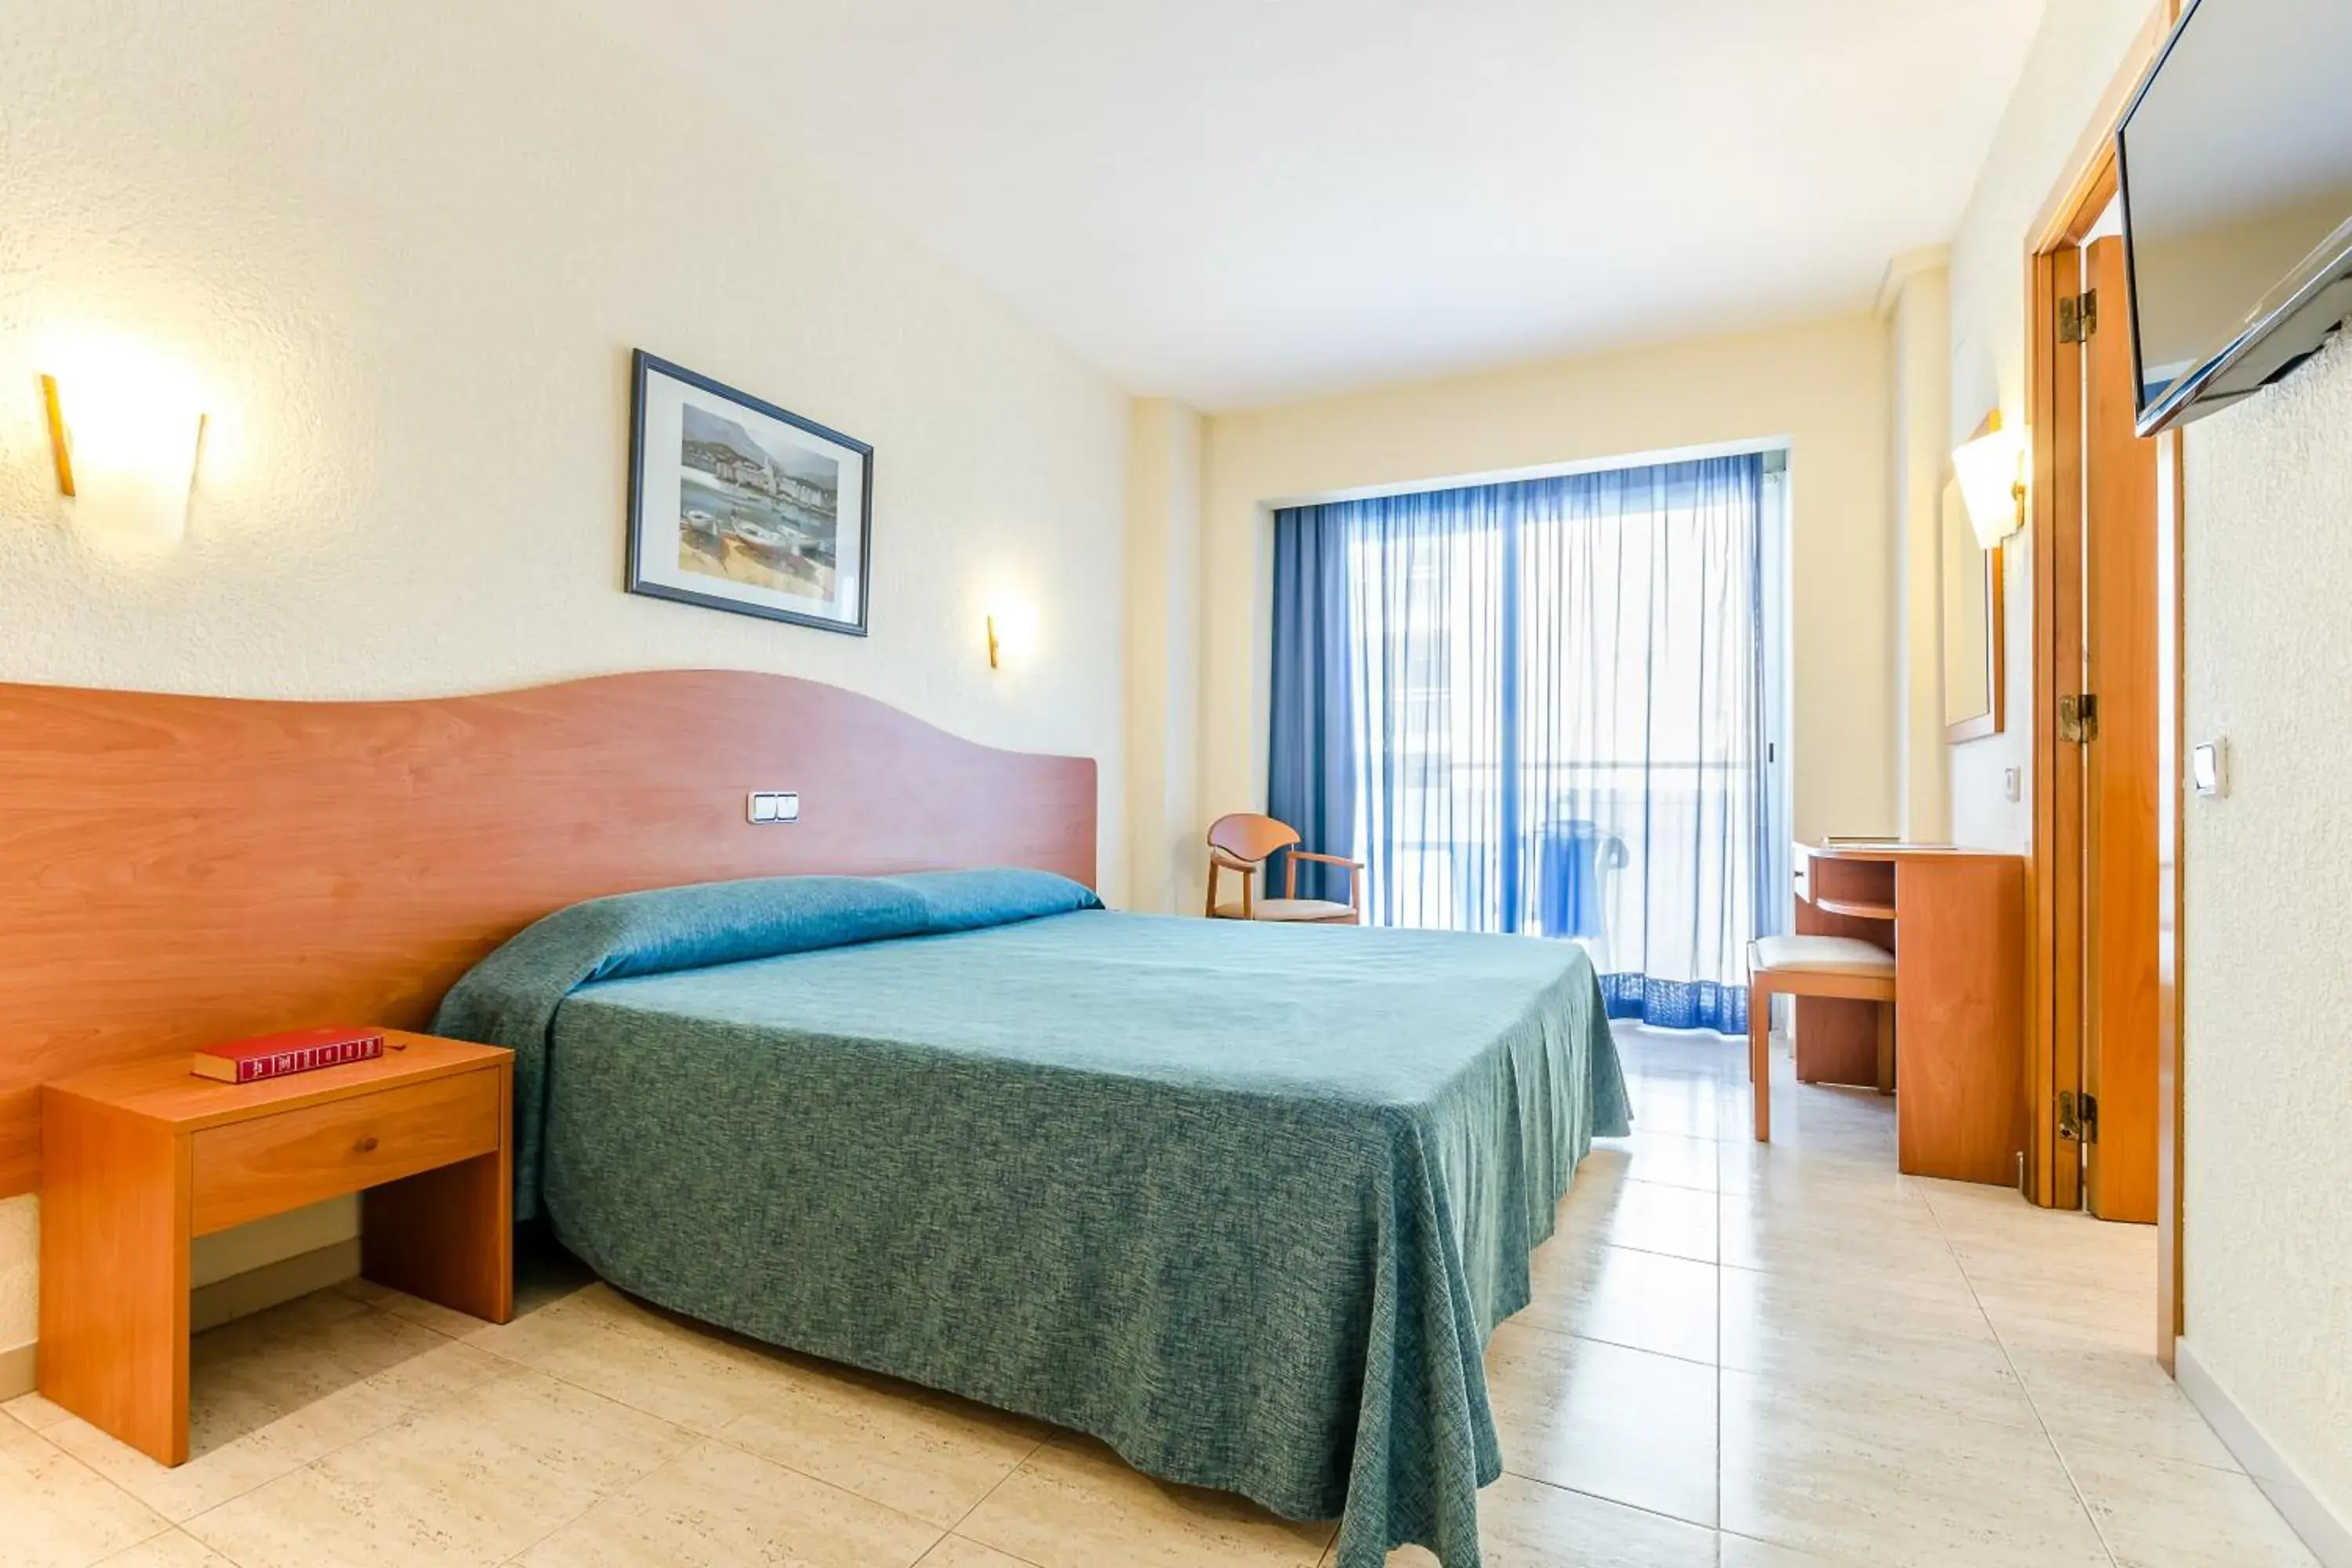 Bedroom, Room Photo in Hotel Mar Blau